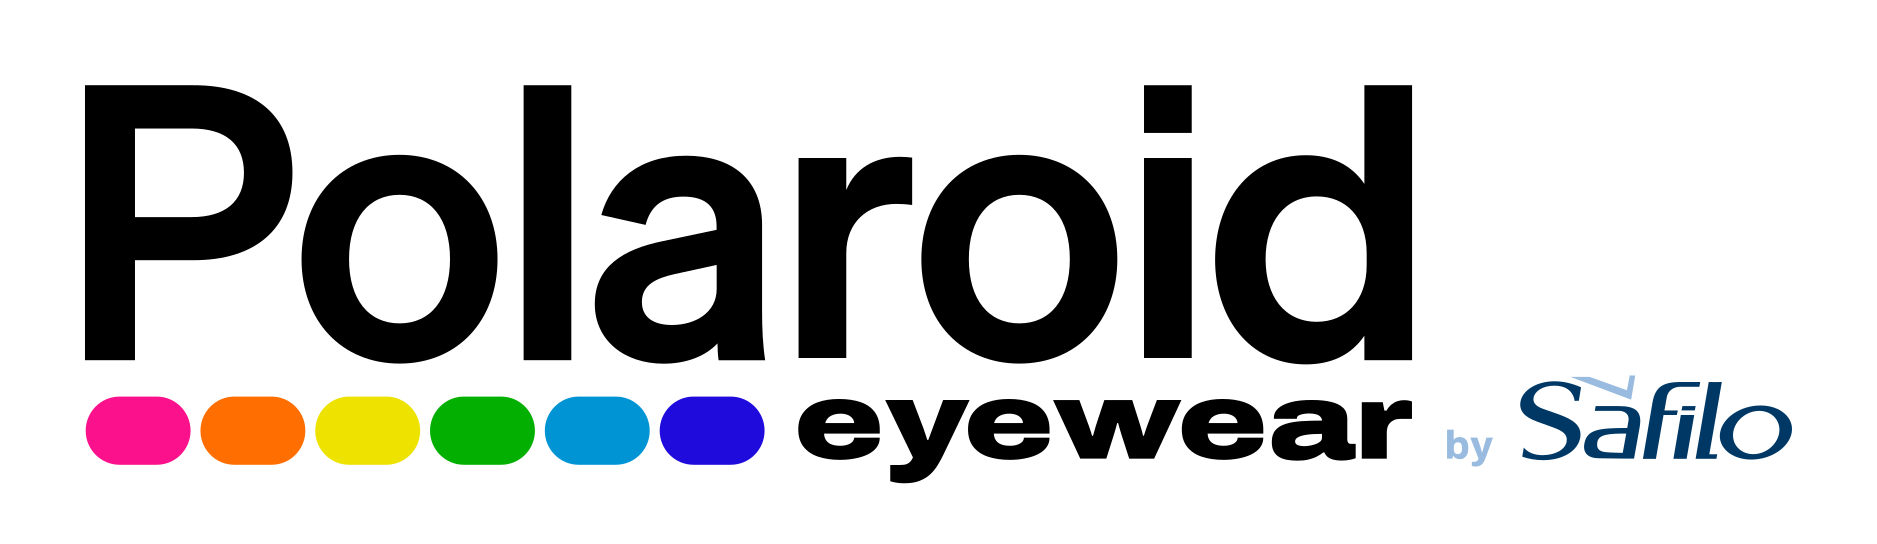 polaroid logo_1